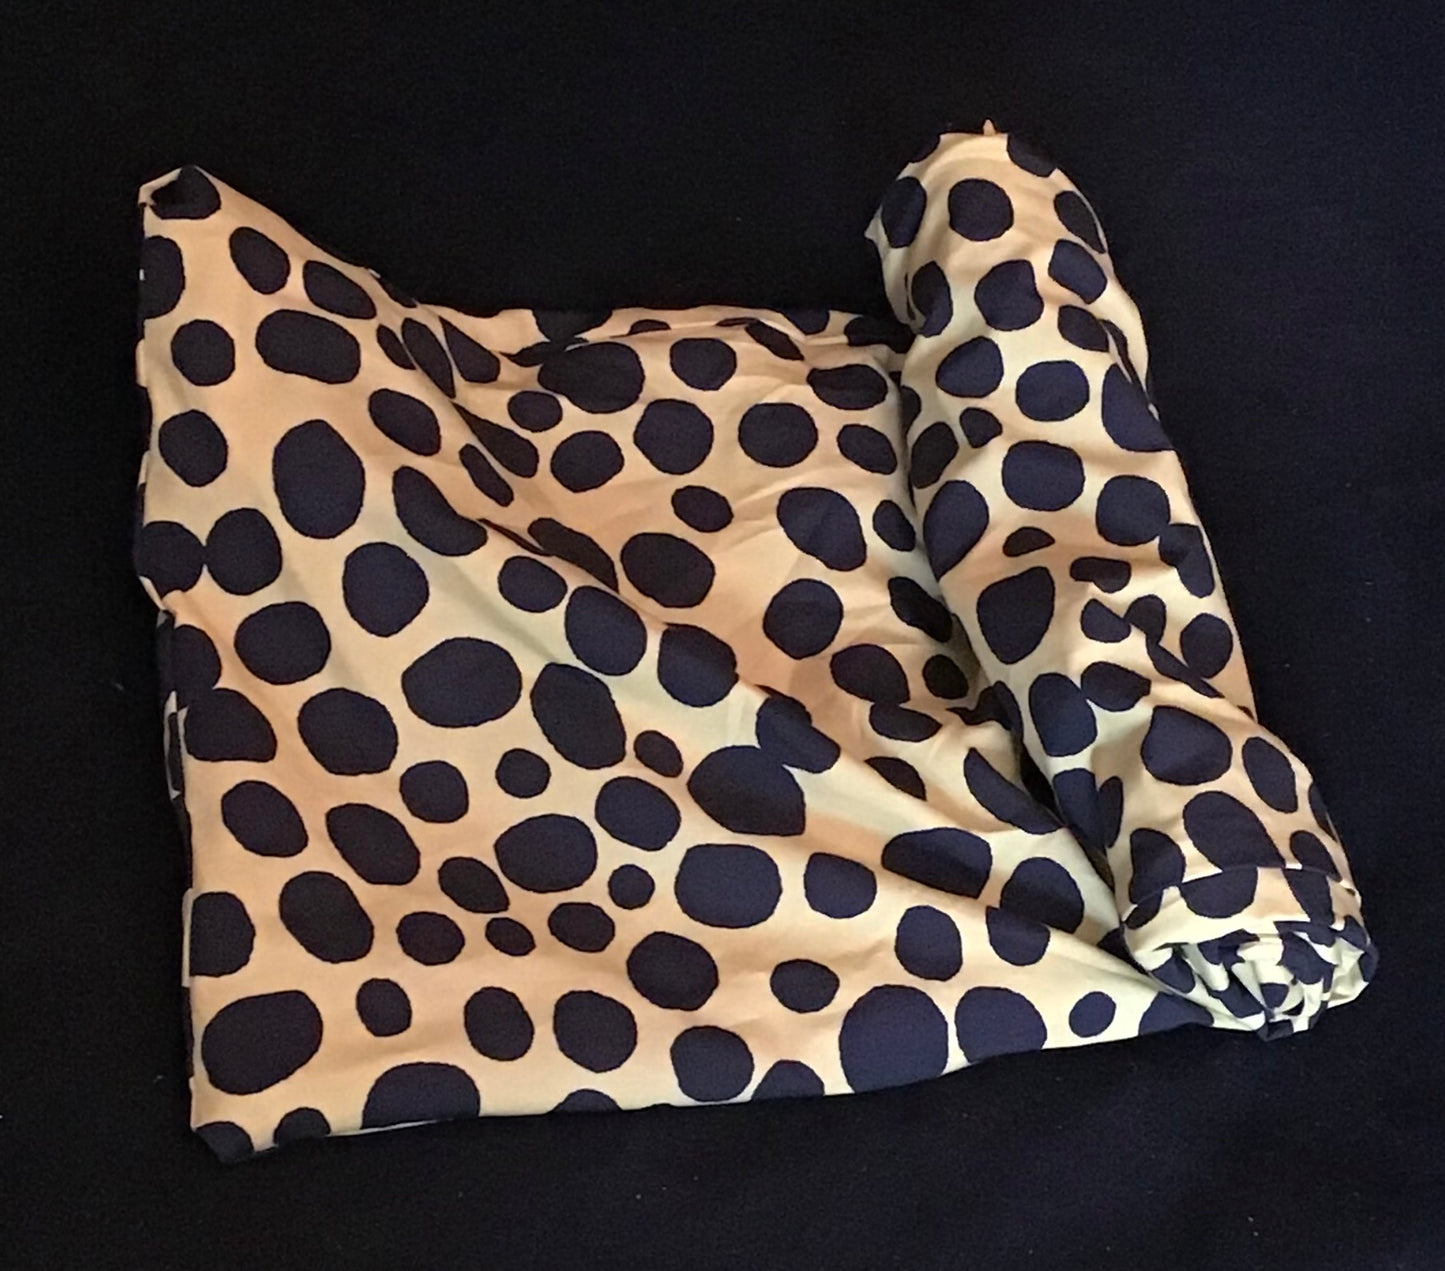 Leopard (dots?) in minimalist cotton print